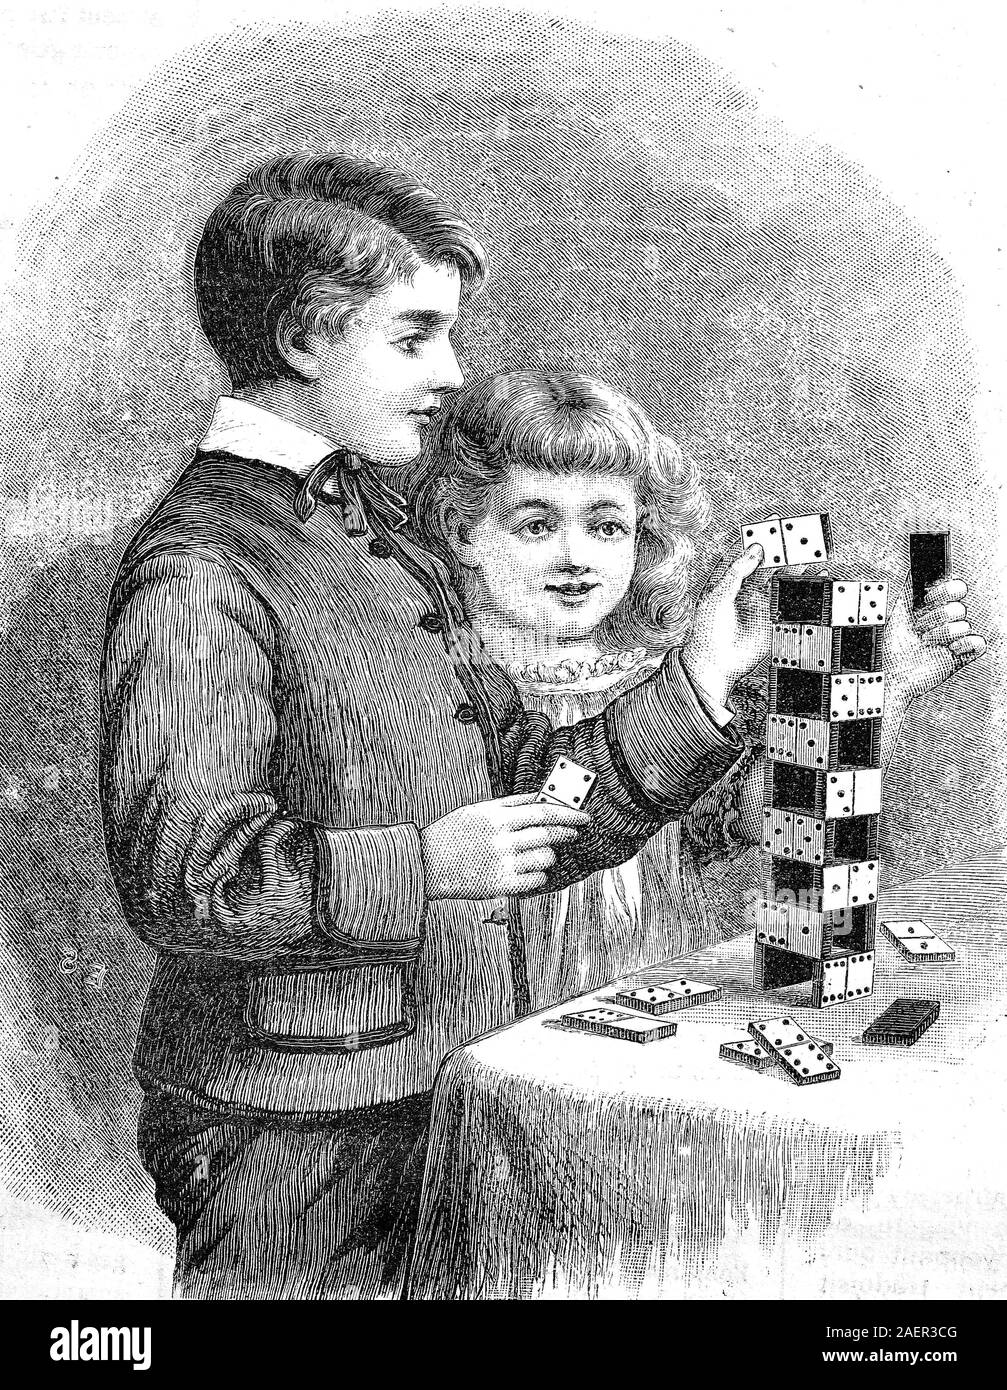 Children build a tower with dominoes  /  Kinder bauen mit Dominosteinen einen Turm, Reproduction of an original 19th century print / Reproduktion von einem Originaldruck aus dem 19. Jahrhundert Stock Photo